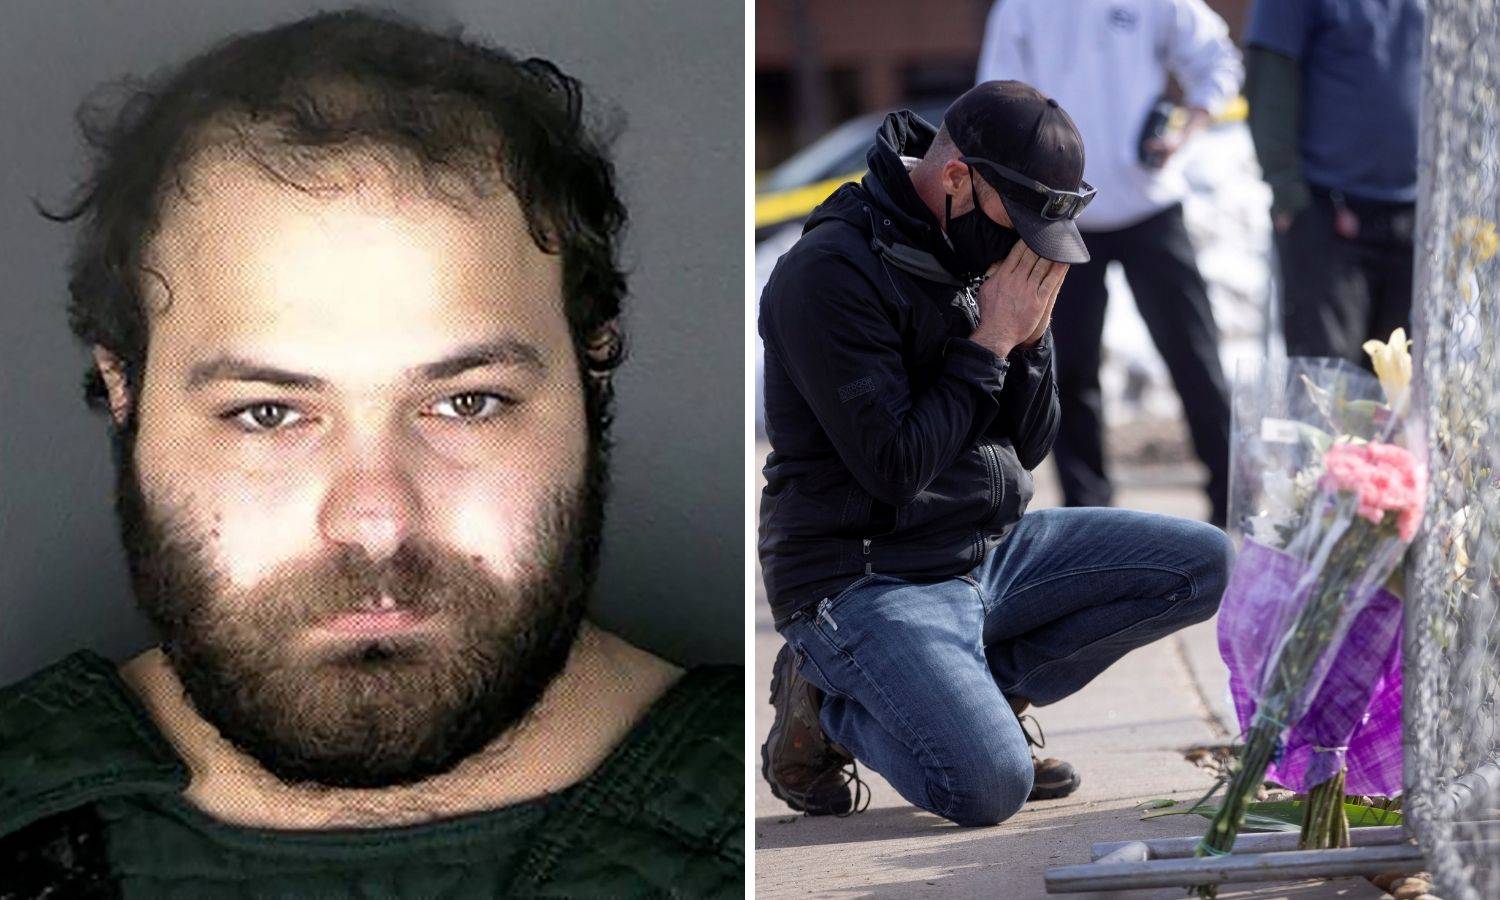 Ubojica iz Colorada pisao je o islamofobima koji ga hakiraju, prijatelji kažu da je bio nasilan